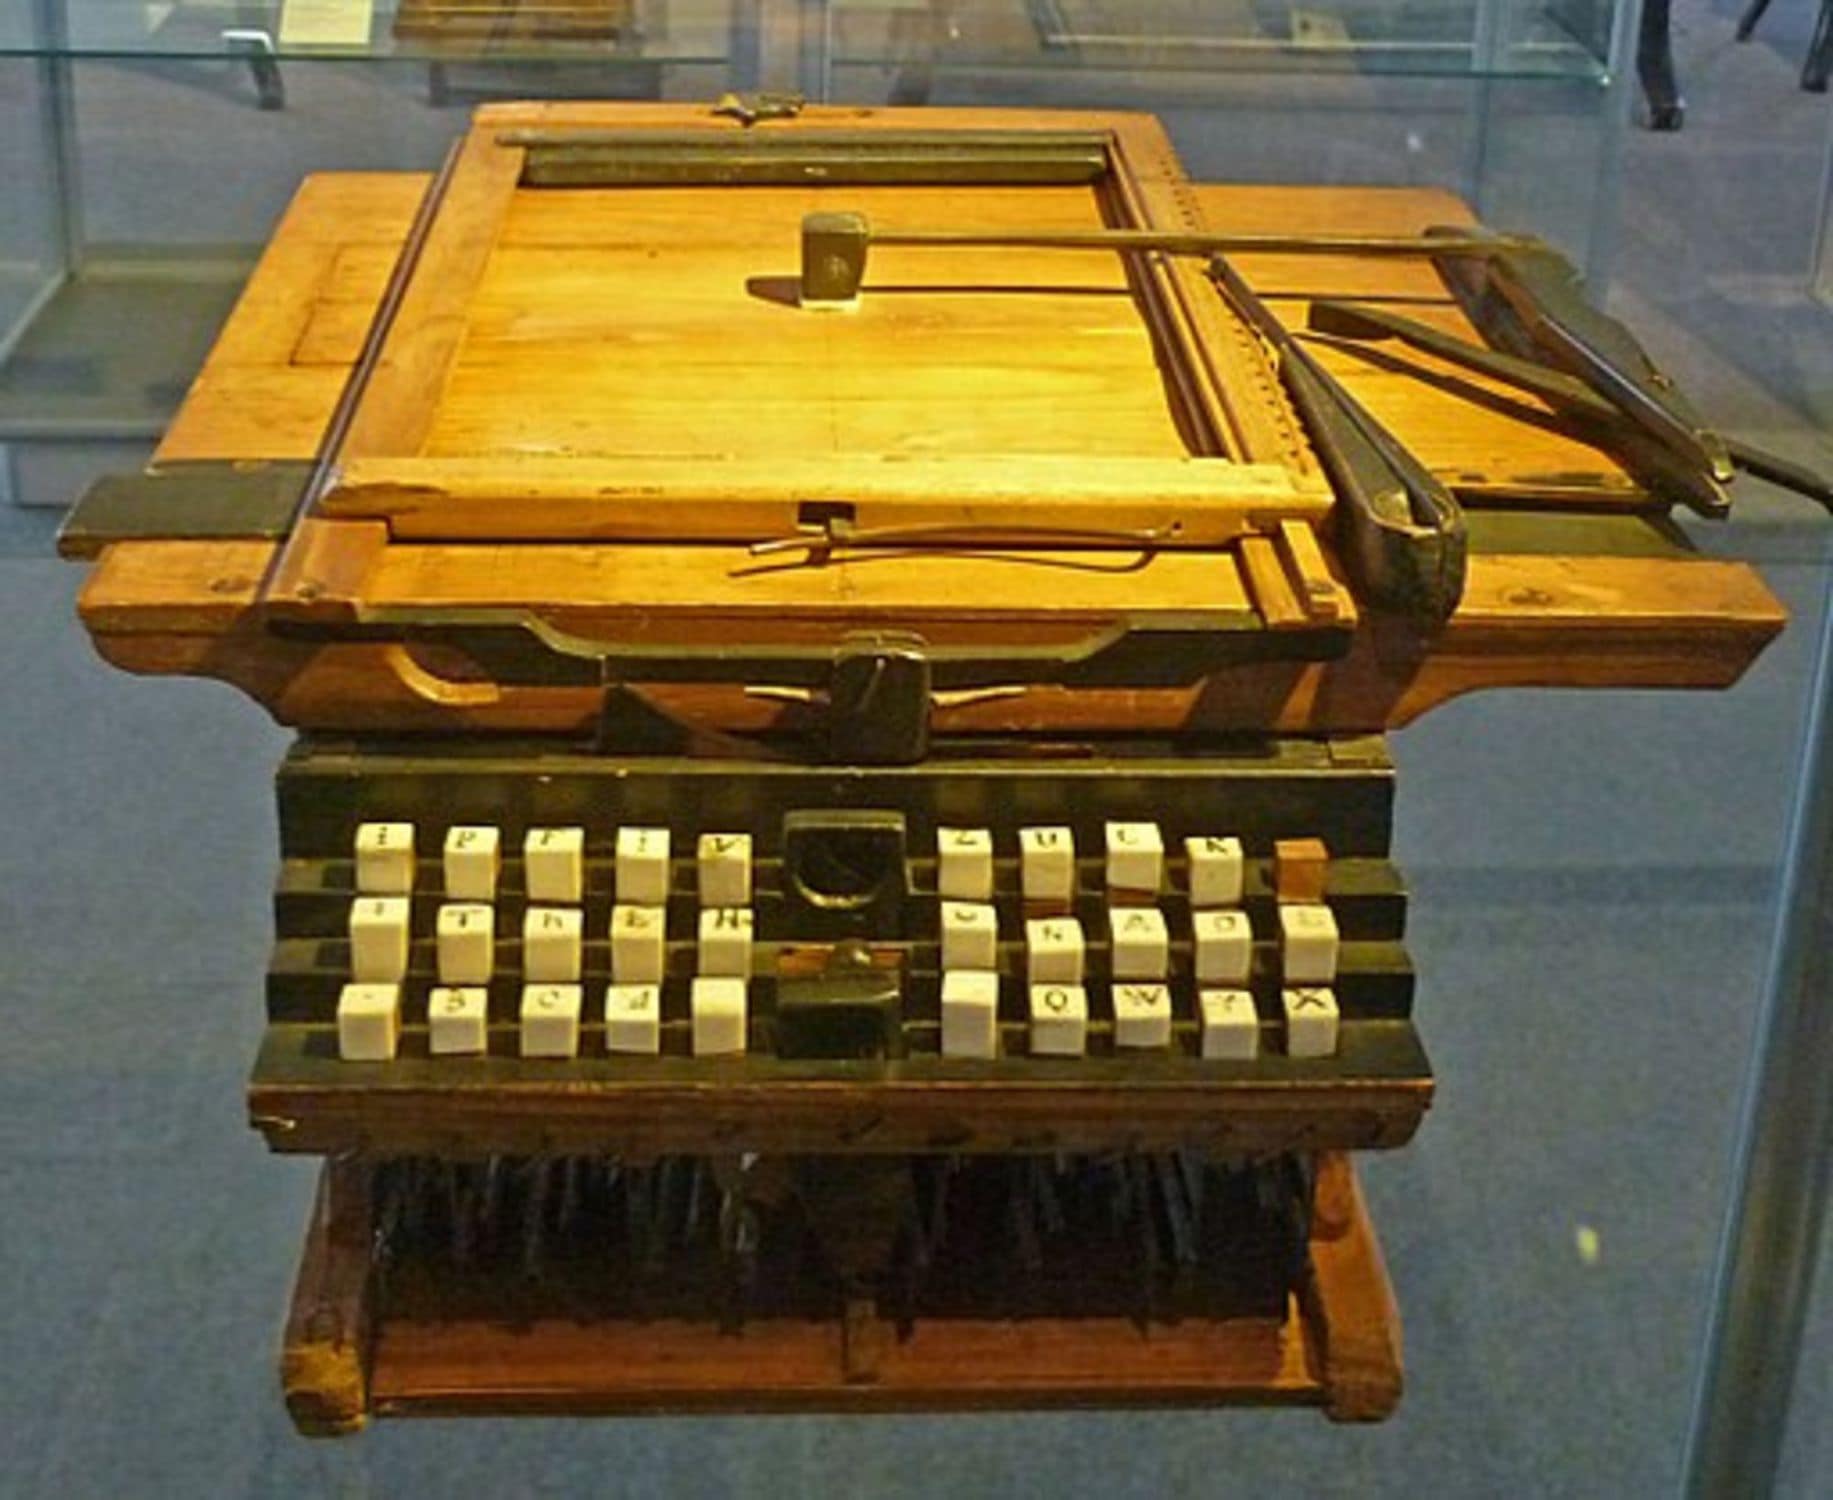 Fotografie einer alten Schreibmaschine, die eine österreichische Erfindung war